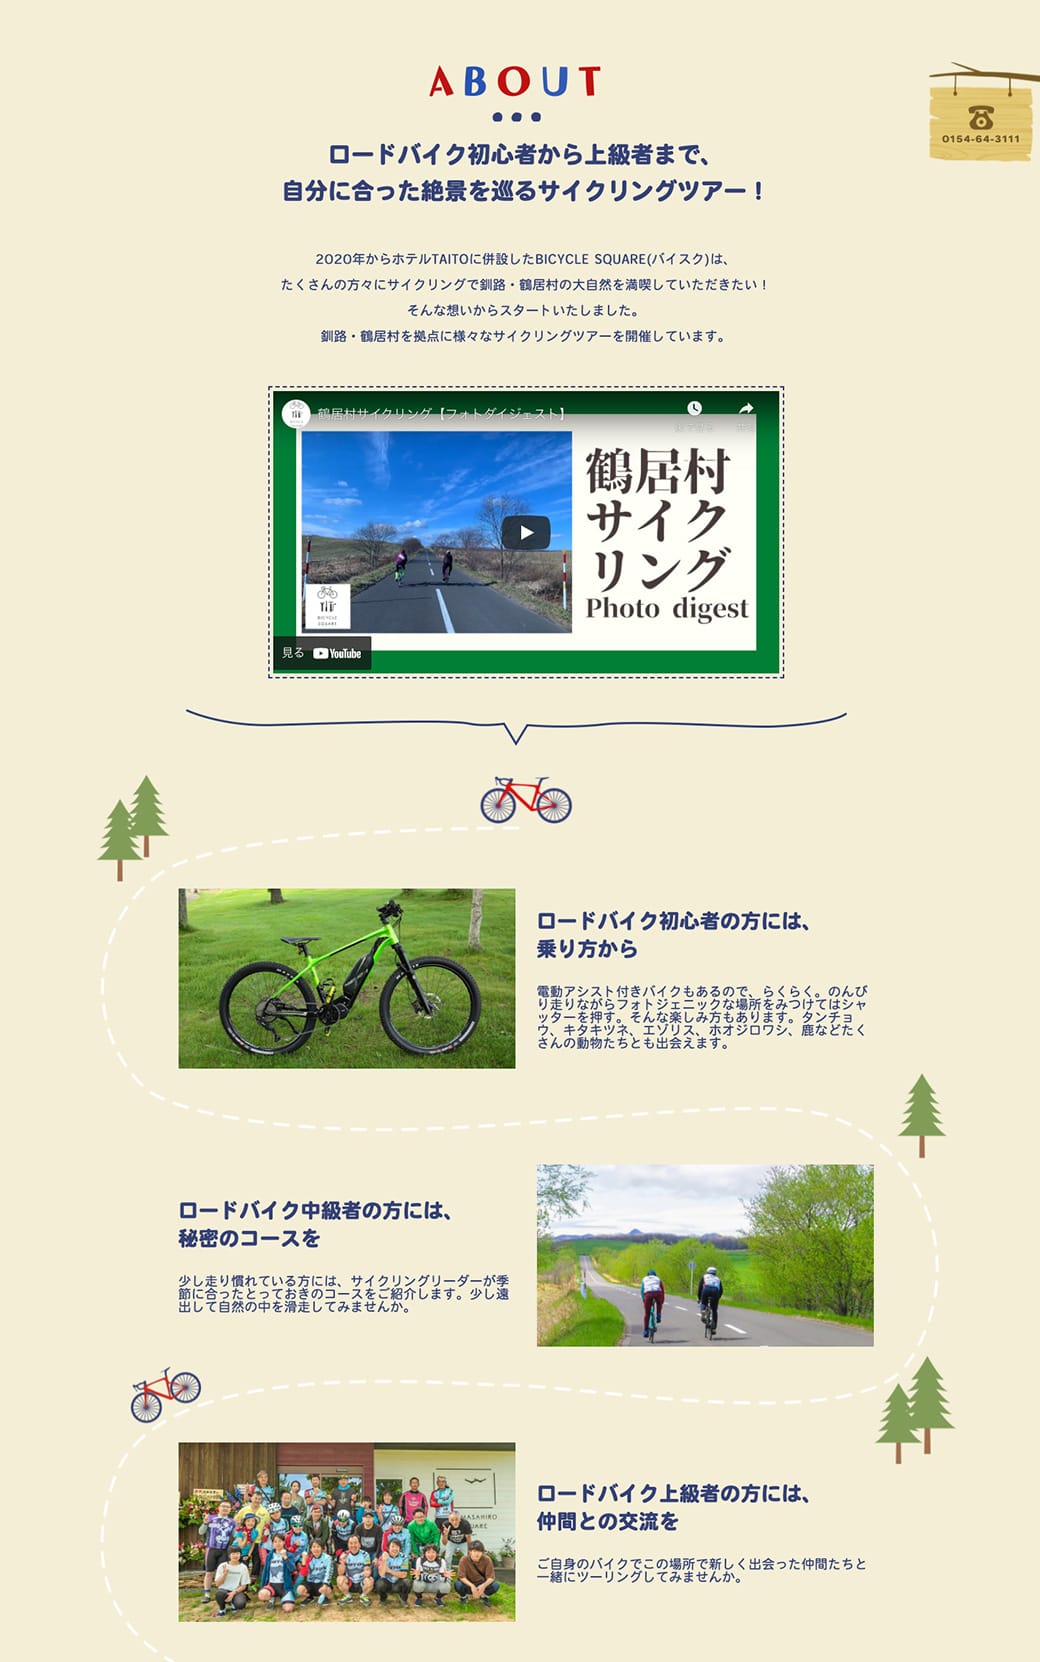 サイクリストのための道東の拠点 BICYCLE SQUARE WEBサイト